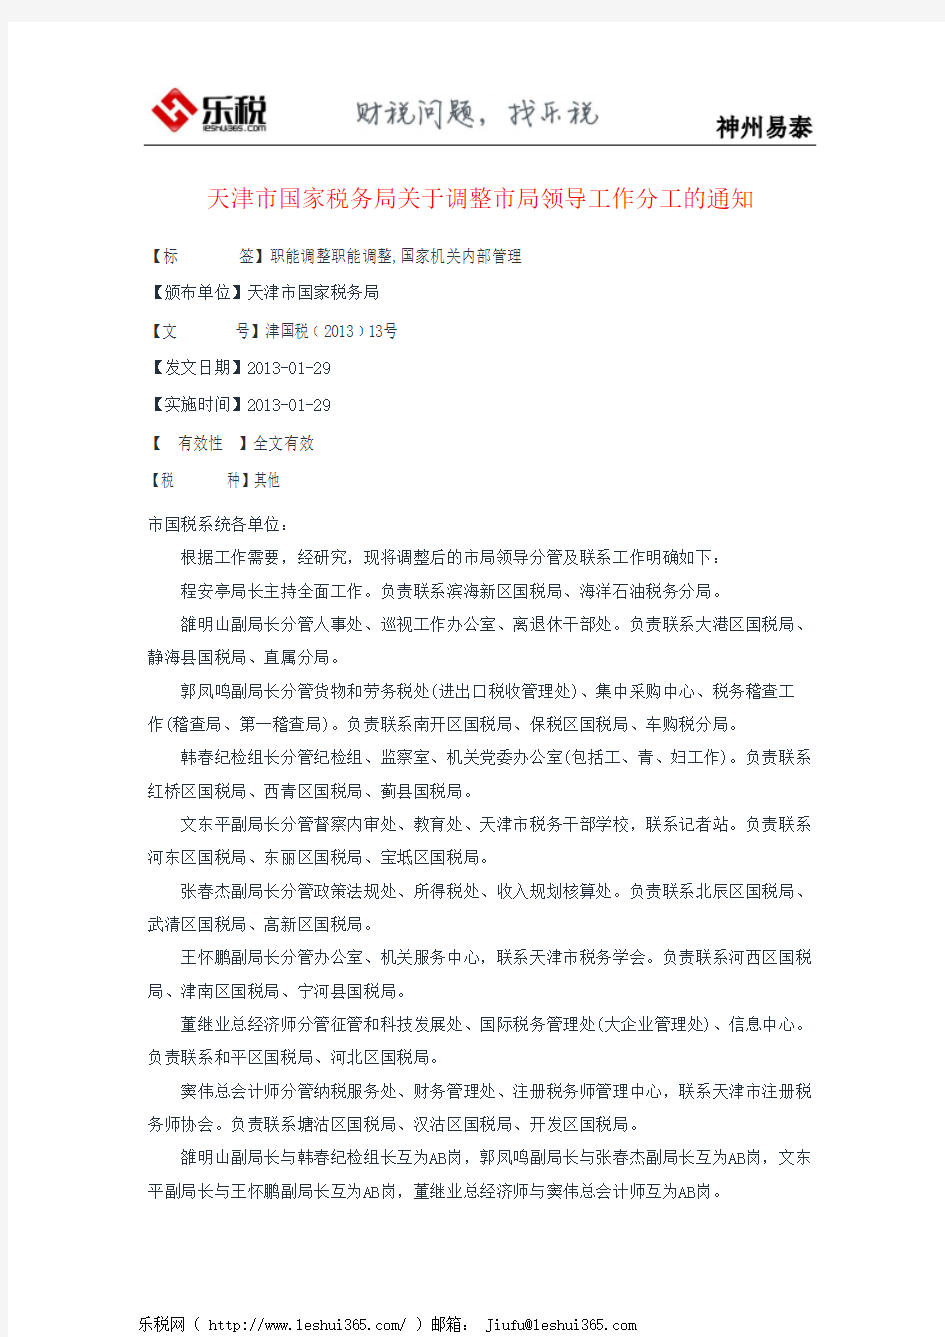 天津市国家税务局关于调整市局领导工作分工的通知